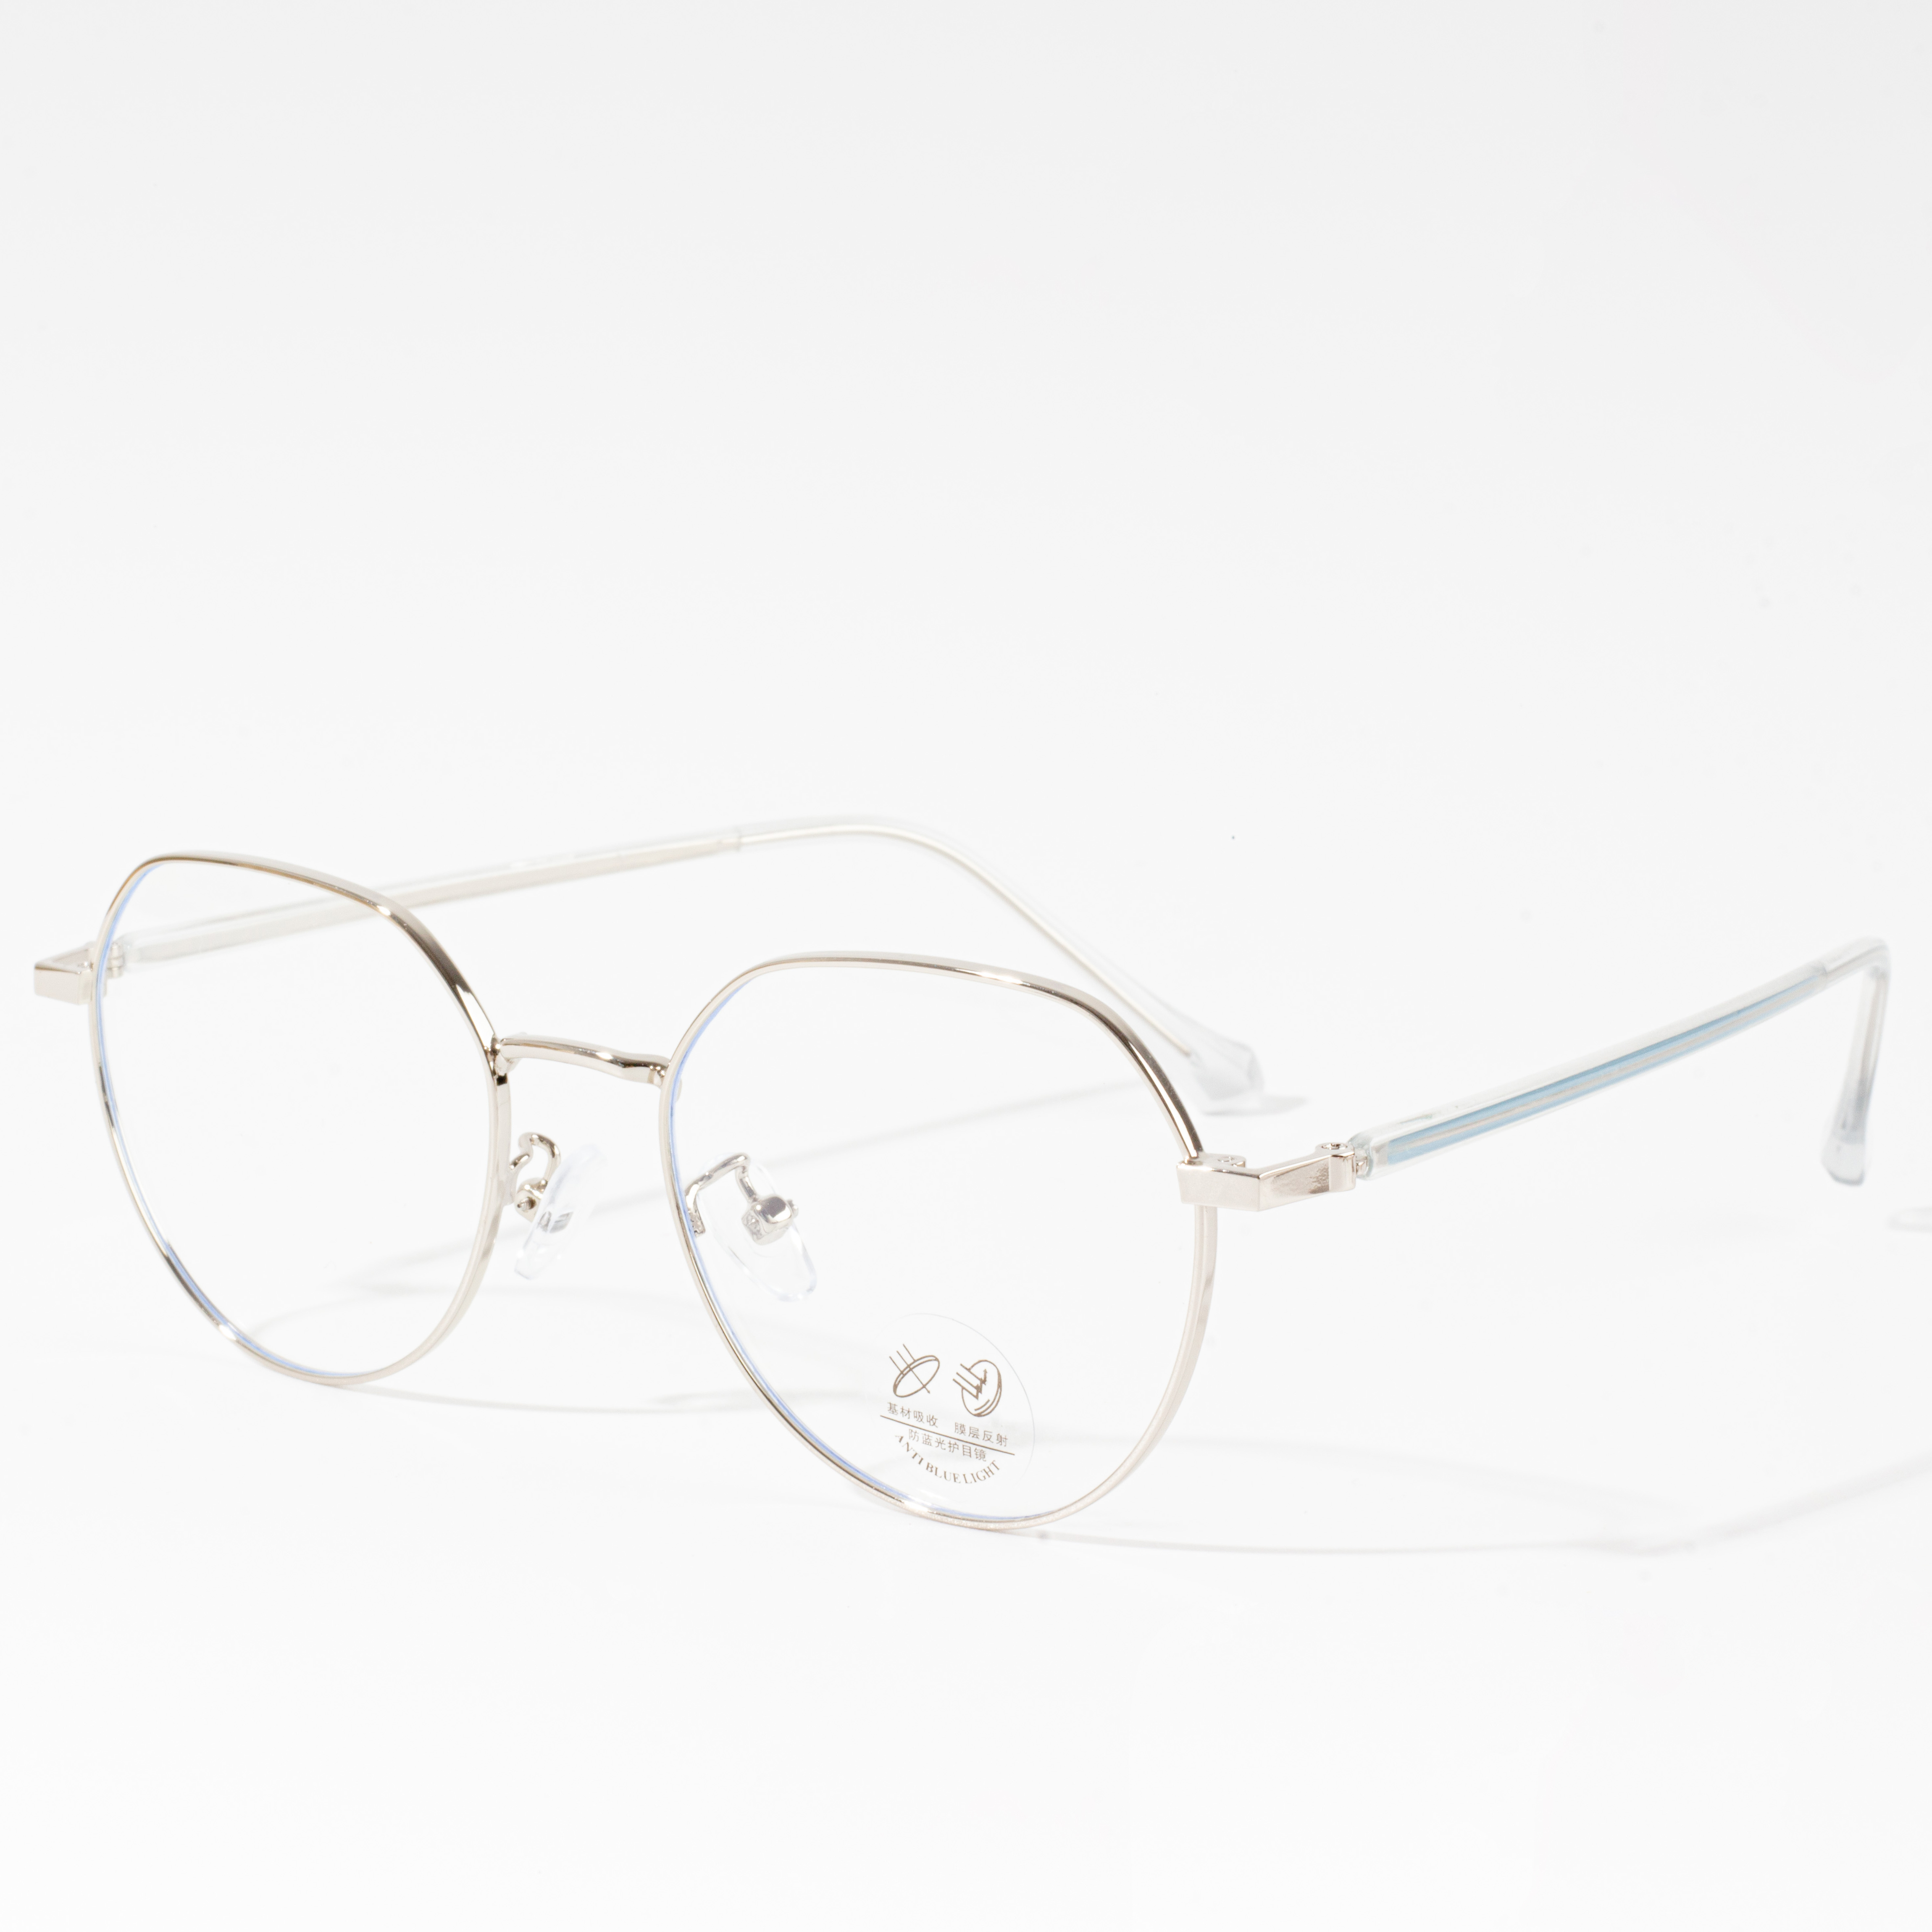 ဒီဇိုင်နာ သတ္တုမျက်မှန်ဘောင်များ